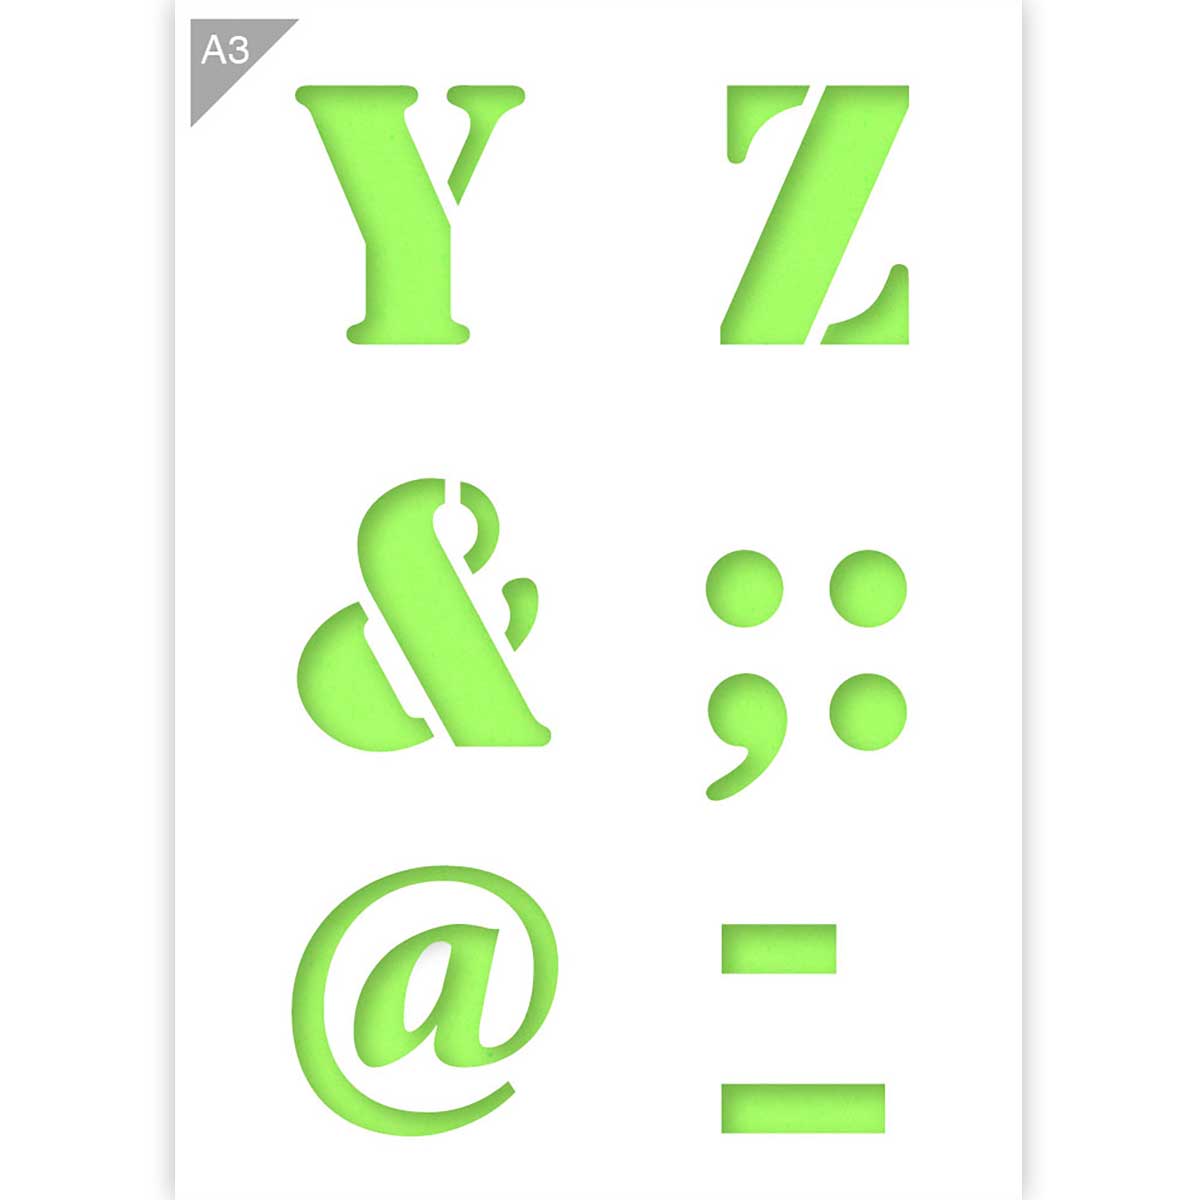 Resultaat Kan worden berekend gebruik Lettersjabloon Y Z & @ op A3 formaat | Suitup Art Supplies